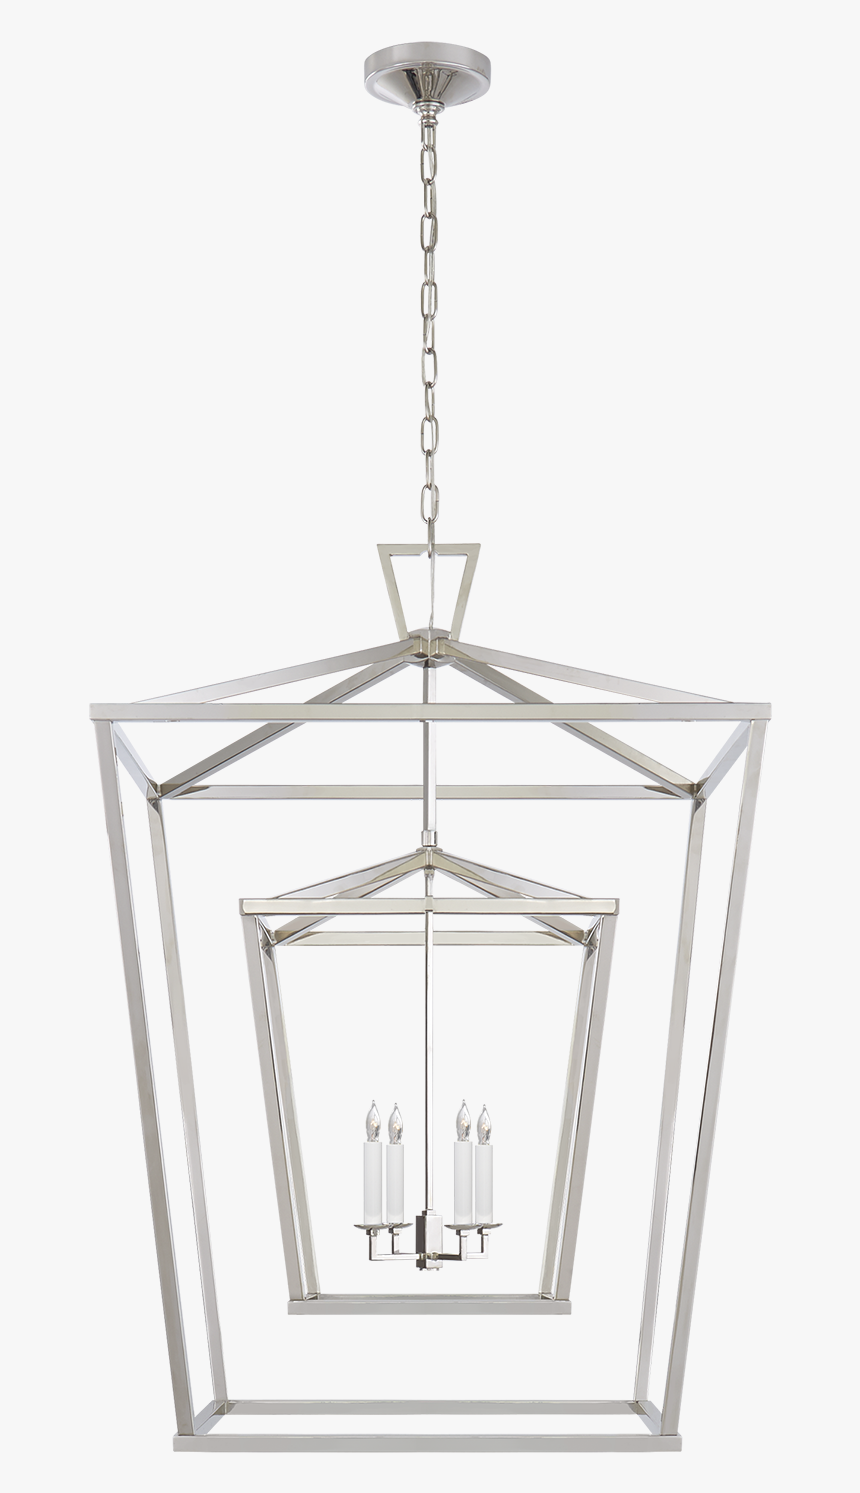 Hanging Lantern Png, Transparent Png, Free Download